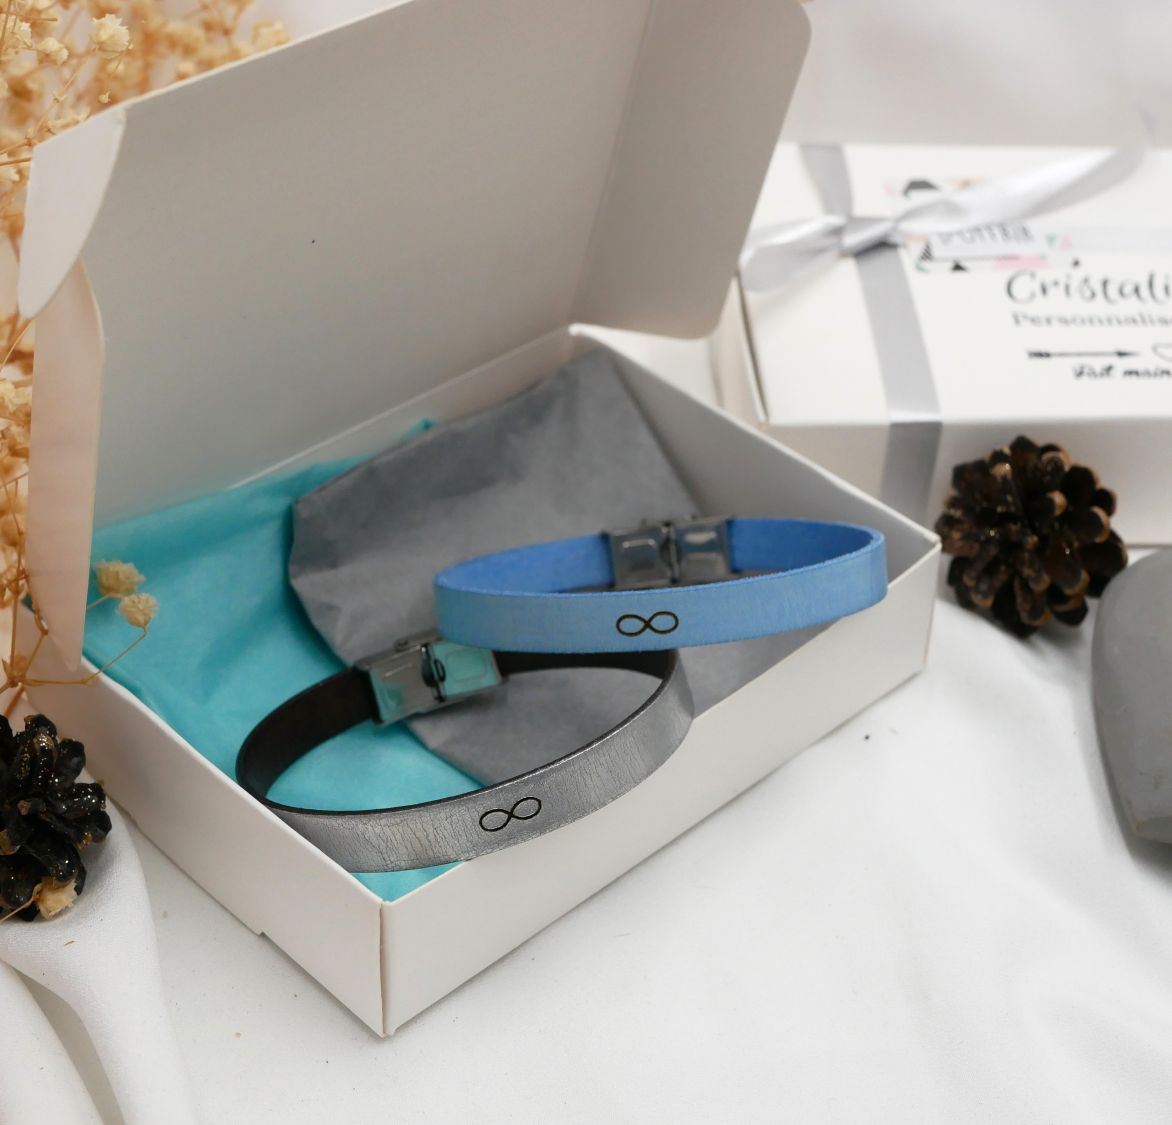 Geschenk für Paare: 2 personalisierte Lederarmbänder durch Gravur 